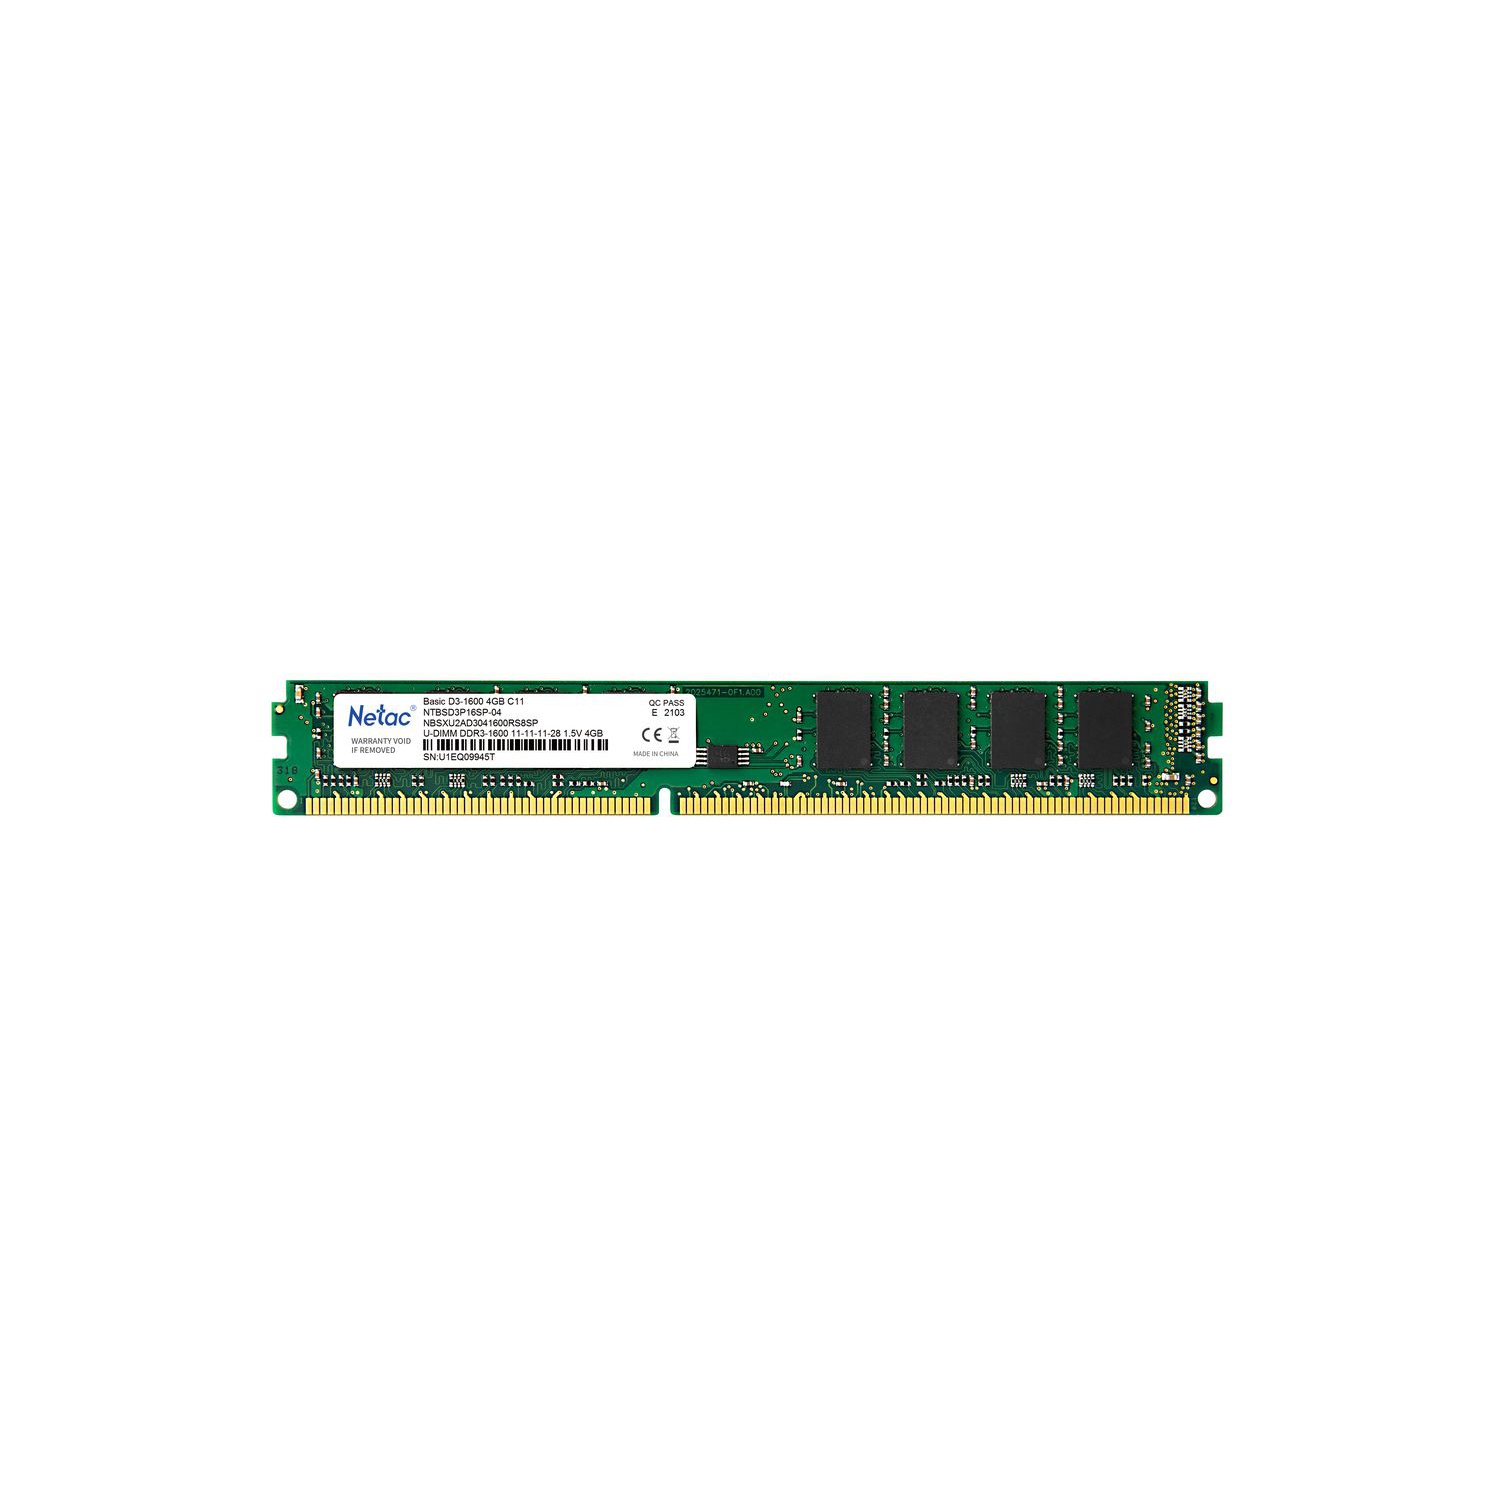 New Netac 4GB DDR3 Ram 1600MHz PC Memory Ram PC3-12800 1.5V CL11 204-Pin